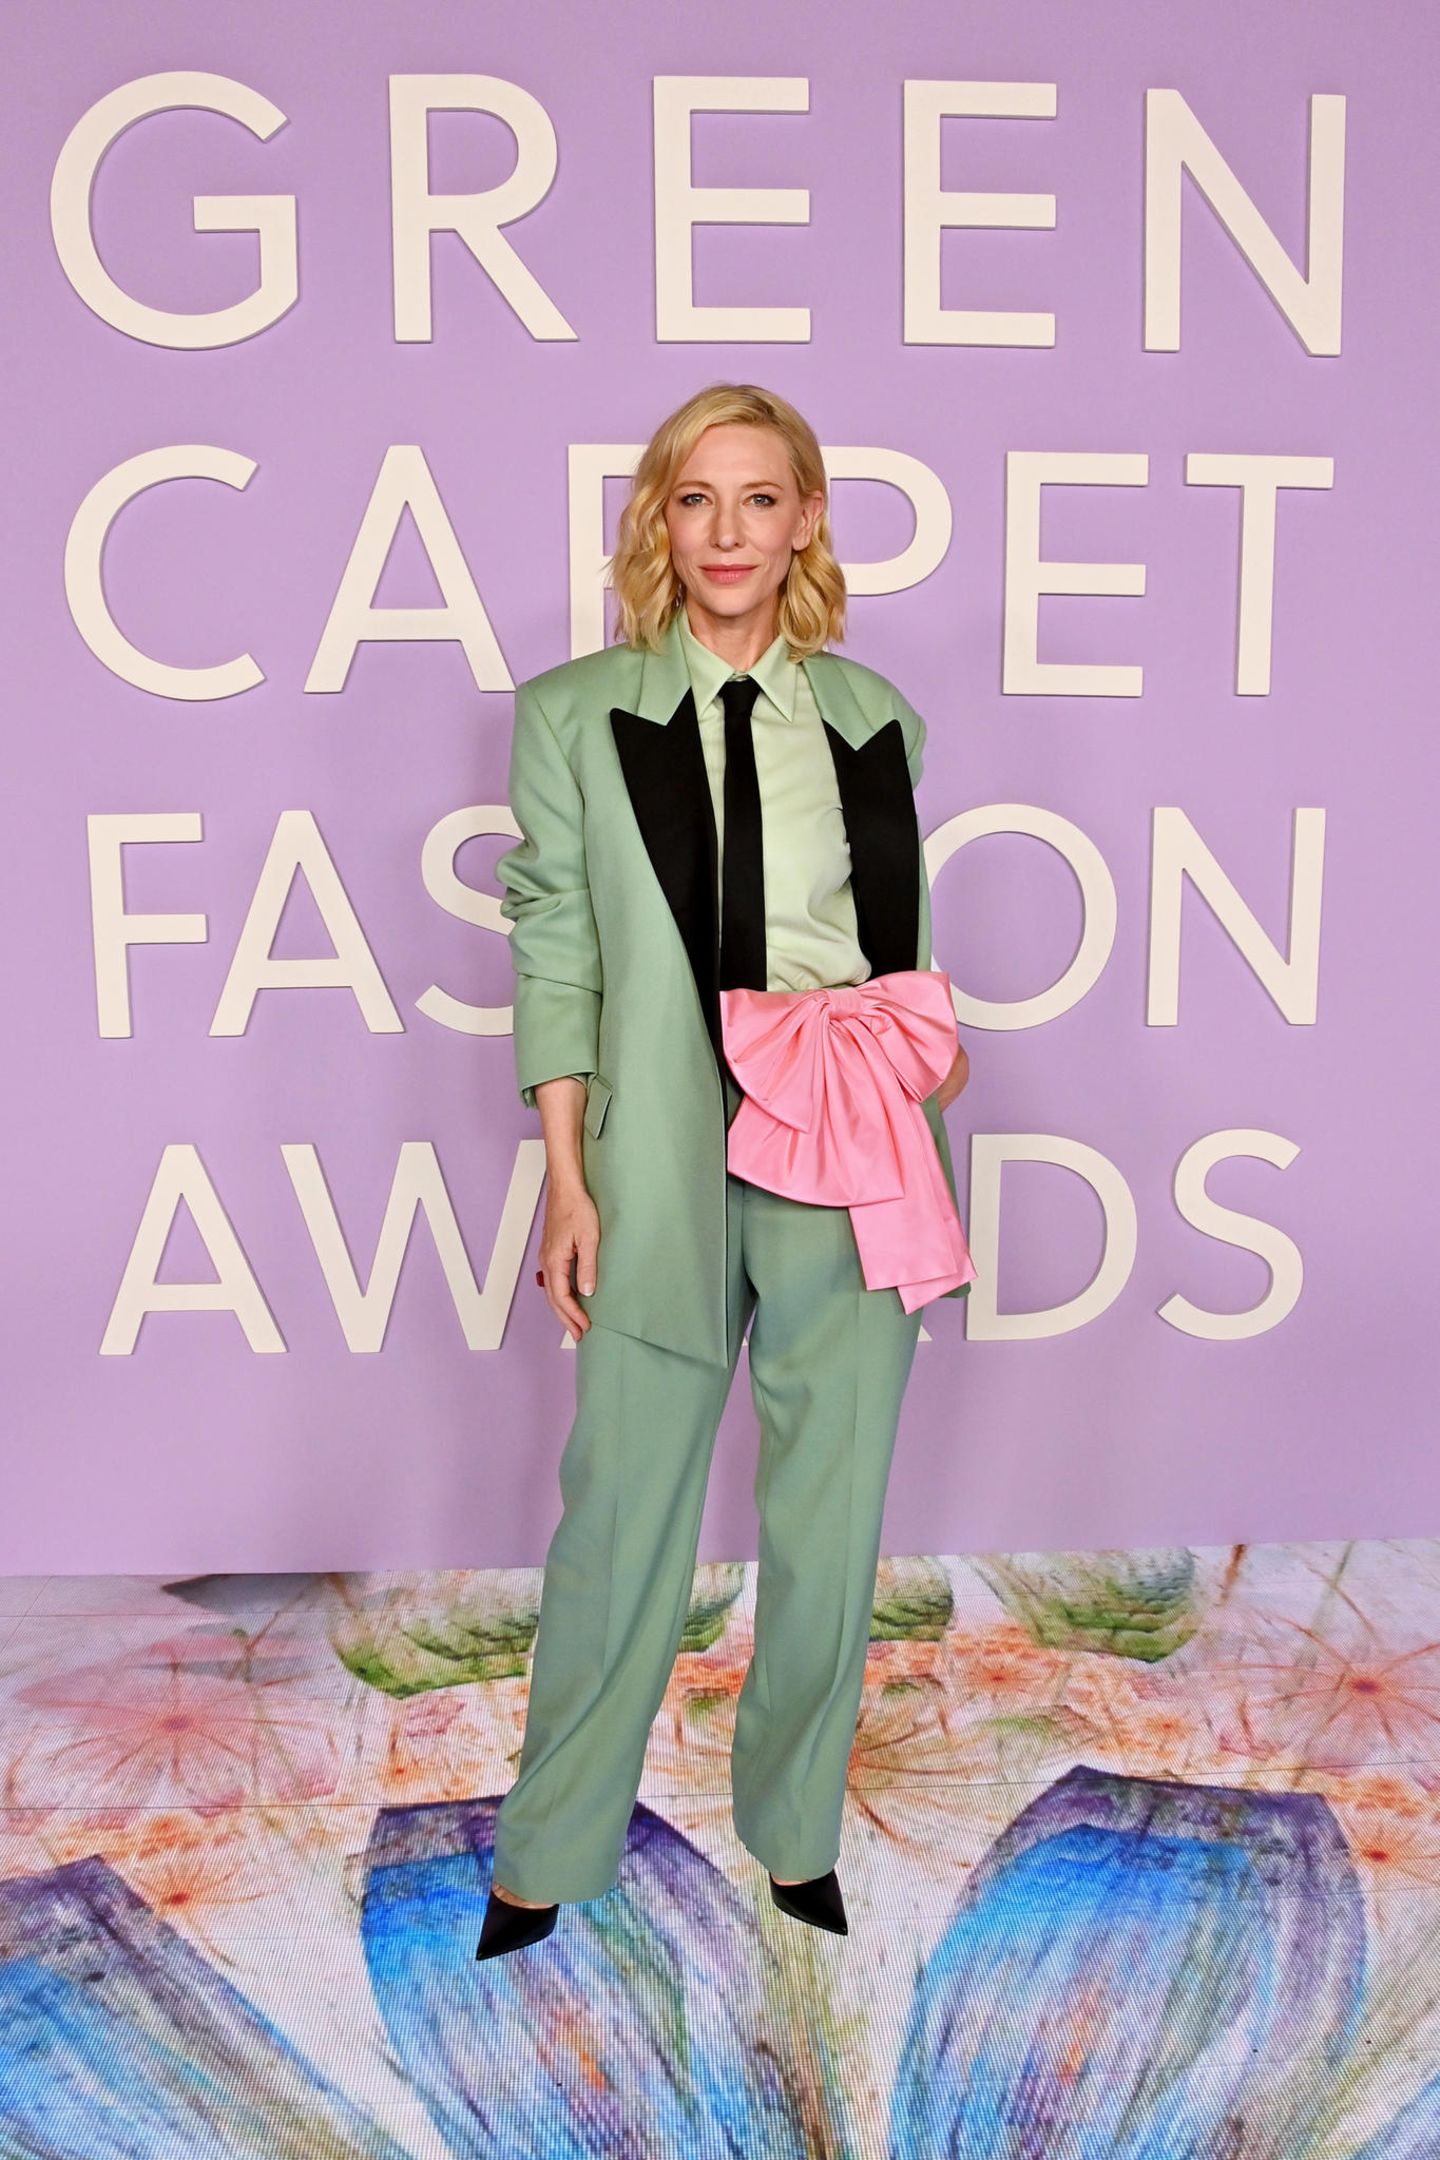 9. März 2023  Bei den "Green Carpet Fashion Awards" werden Persönlichkeiten aus der Mode- und Unterhaltungsbranche gewürdigt, die sich positiv für den kulturellen Wandel einsetzen. In Los Angeles präsentiert sich Cate Blanchett dazu in einem farbenfrohen Look, der sie zum absoluten Hingucker des Abends macht. Besonderes Highlight: Die pinkfarbene Schleife.